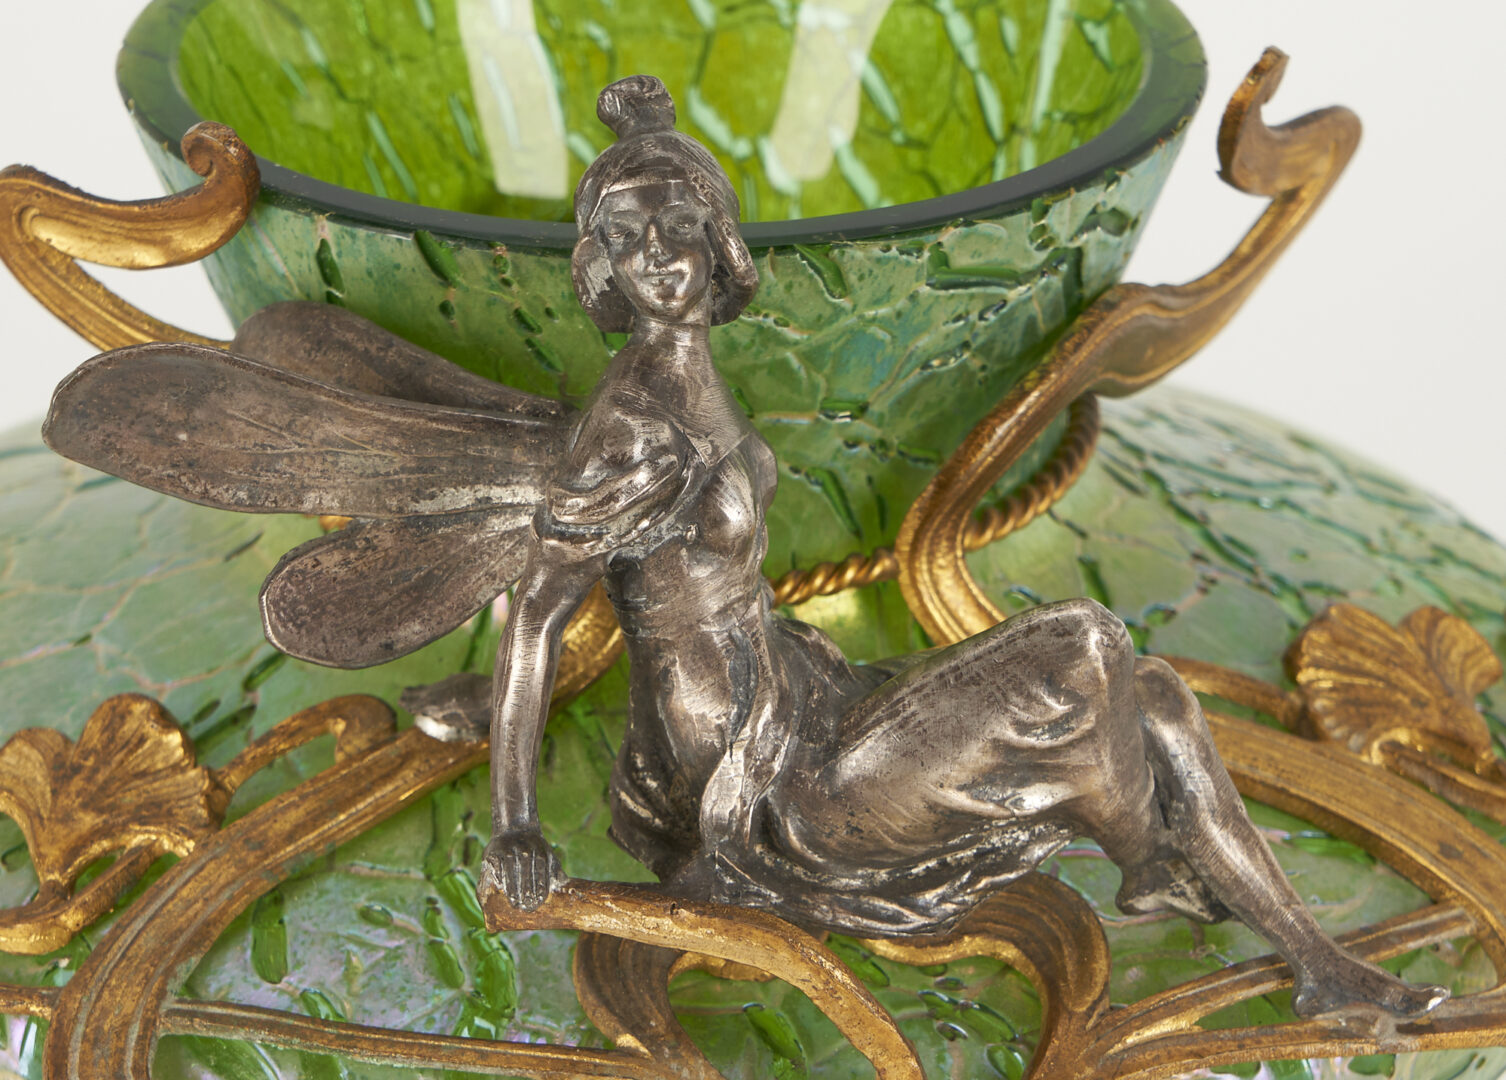 Lot 458: Loetz Art Nouveau Gilt Figural Fairy Mounted Crackle Iridescent Vase